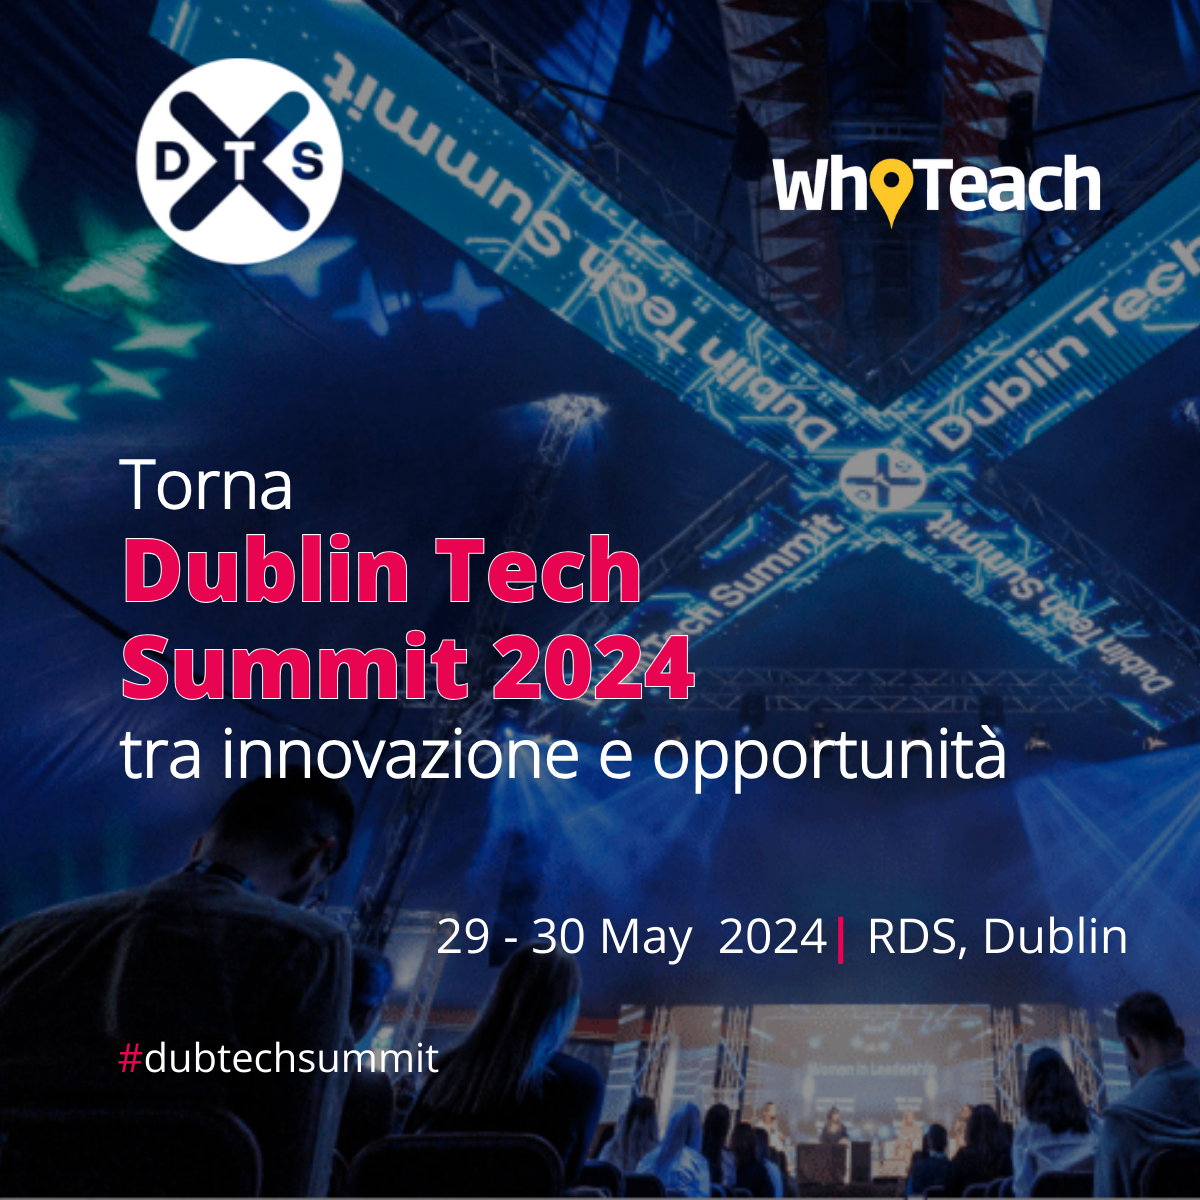 Torna Dublin Tech Summit 2024 tra innovazione e opportunità